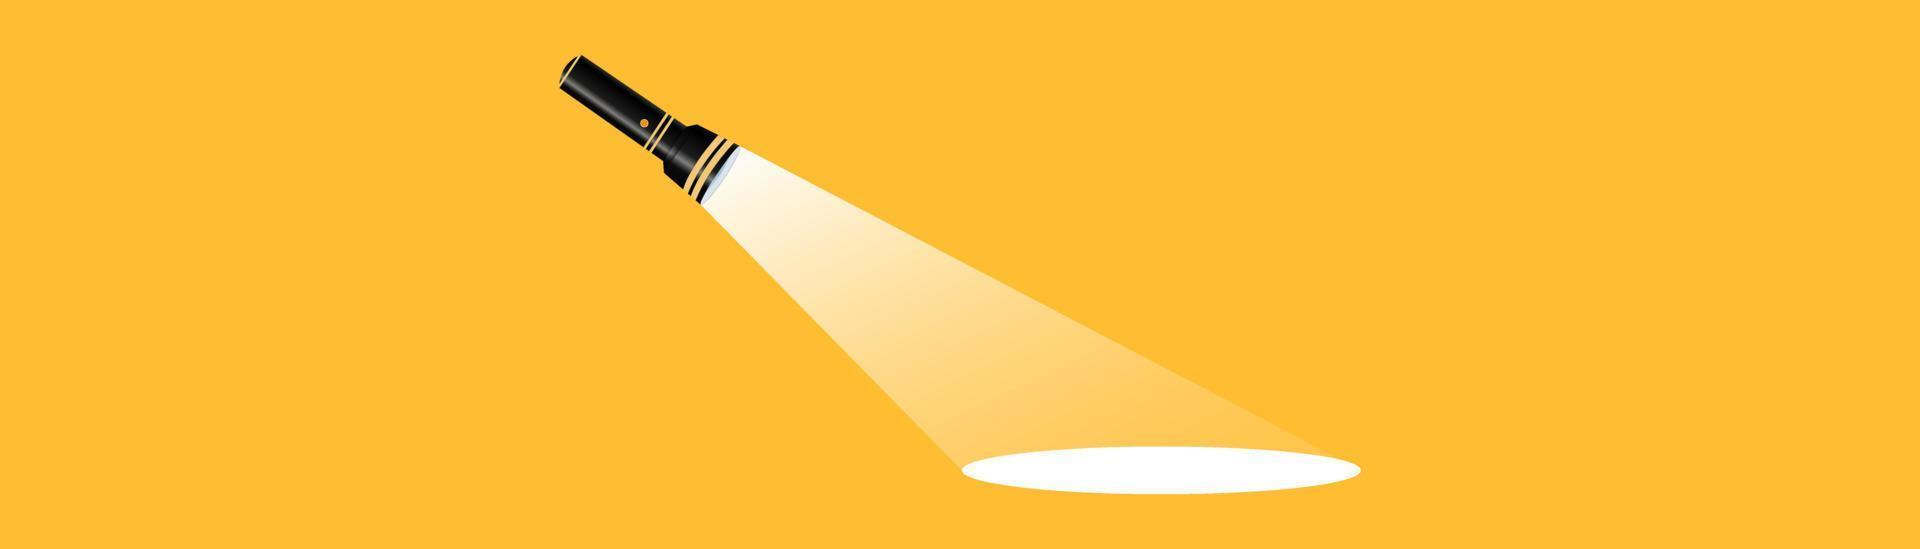 silhueta de lanterna em um fundo amarelo. encontrar ou encontrar um conceito de design. aplicável como banner, anúncio, design de mensagem. ilustração vetorial plana. lanterna, lâmpada, holofote, propaganda. vetor